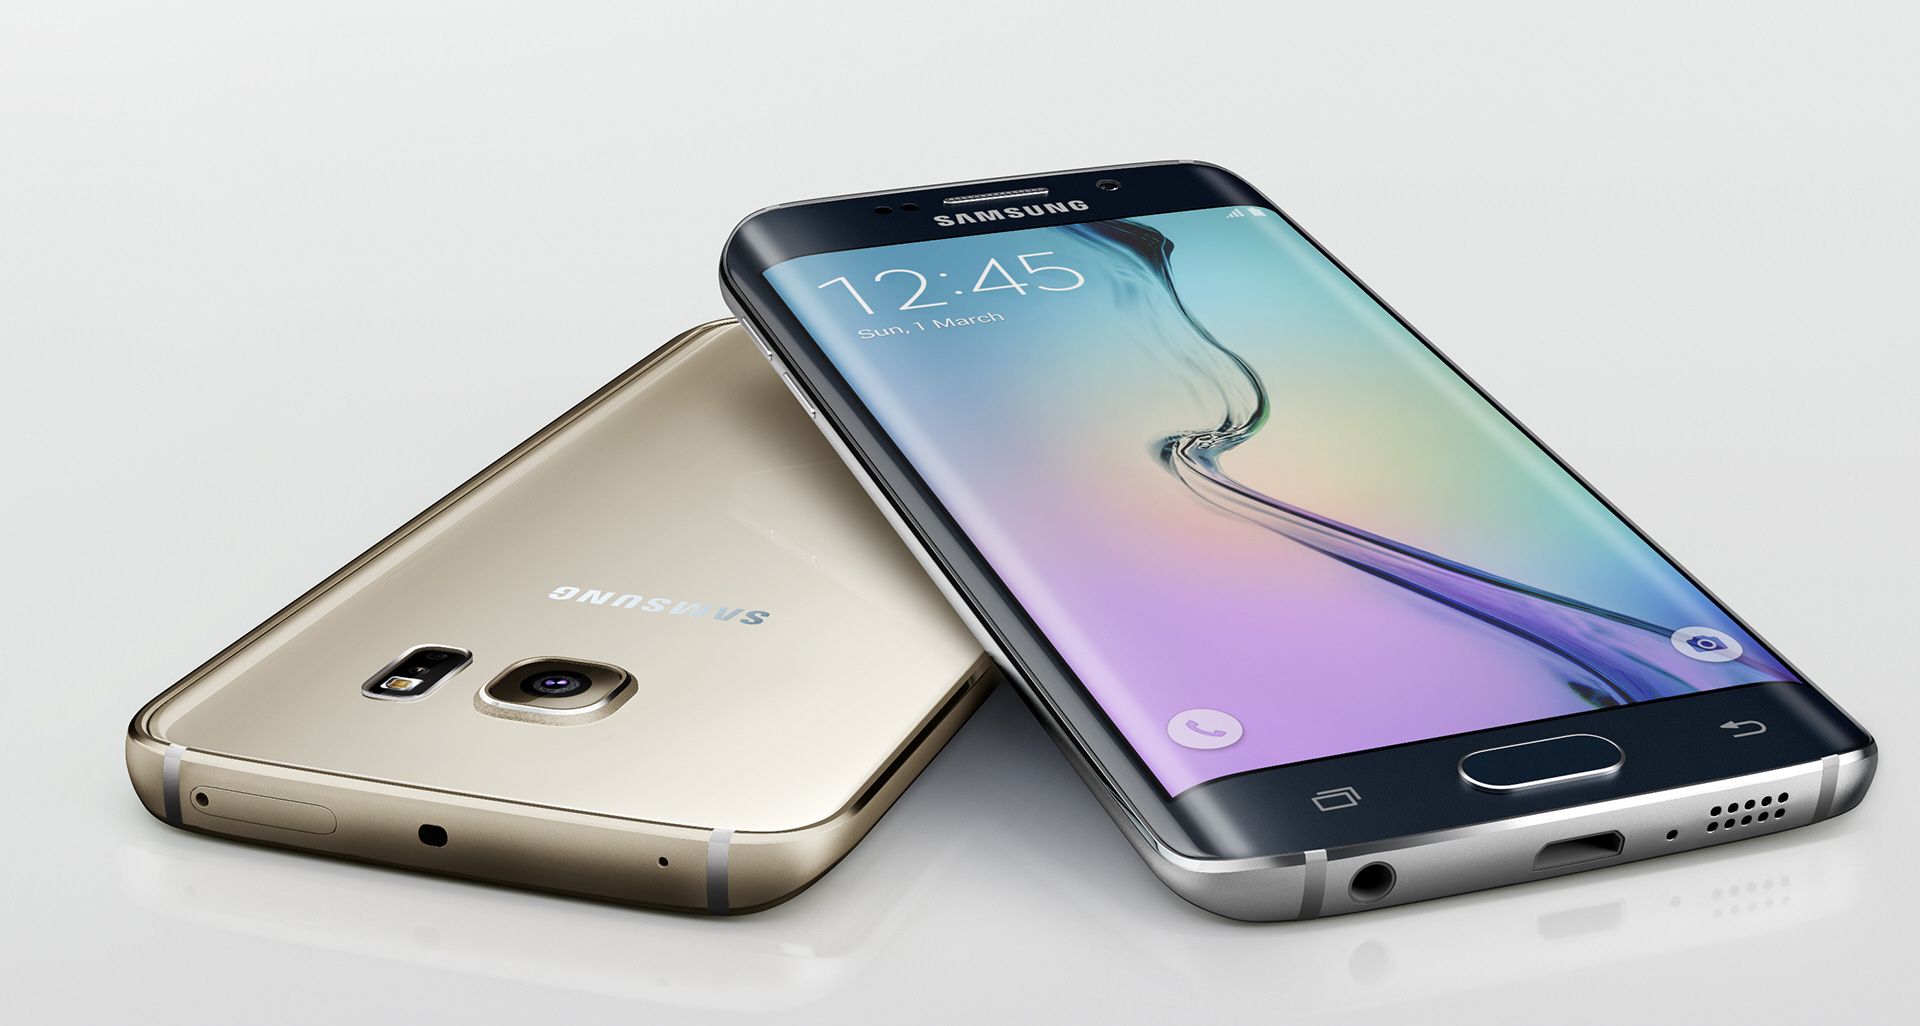 🔥 Le Samsung Galaxy S6 Edge est en promotion à 462€